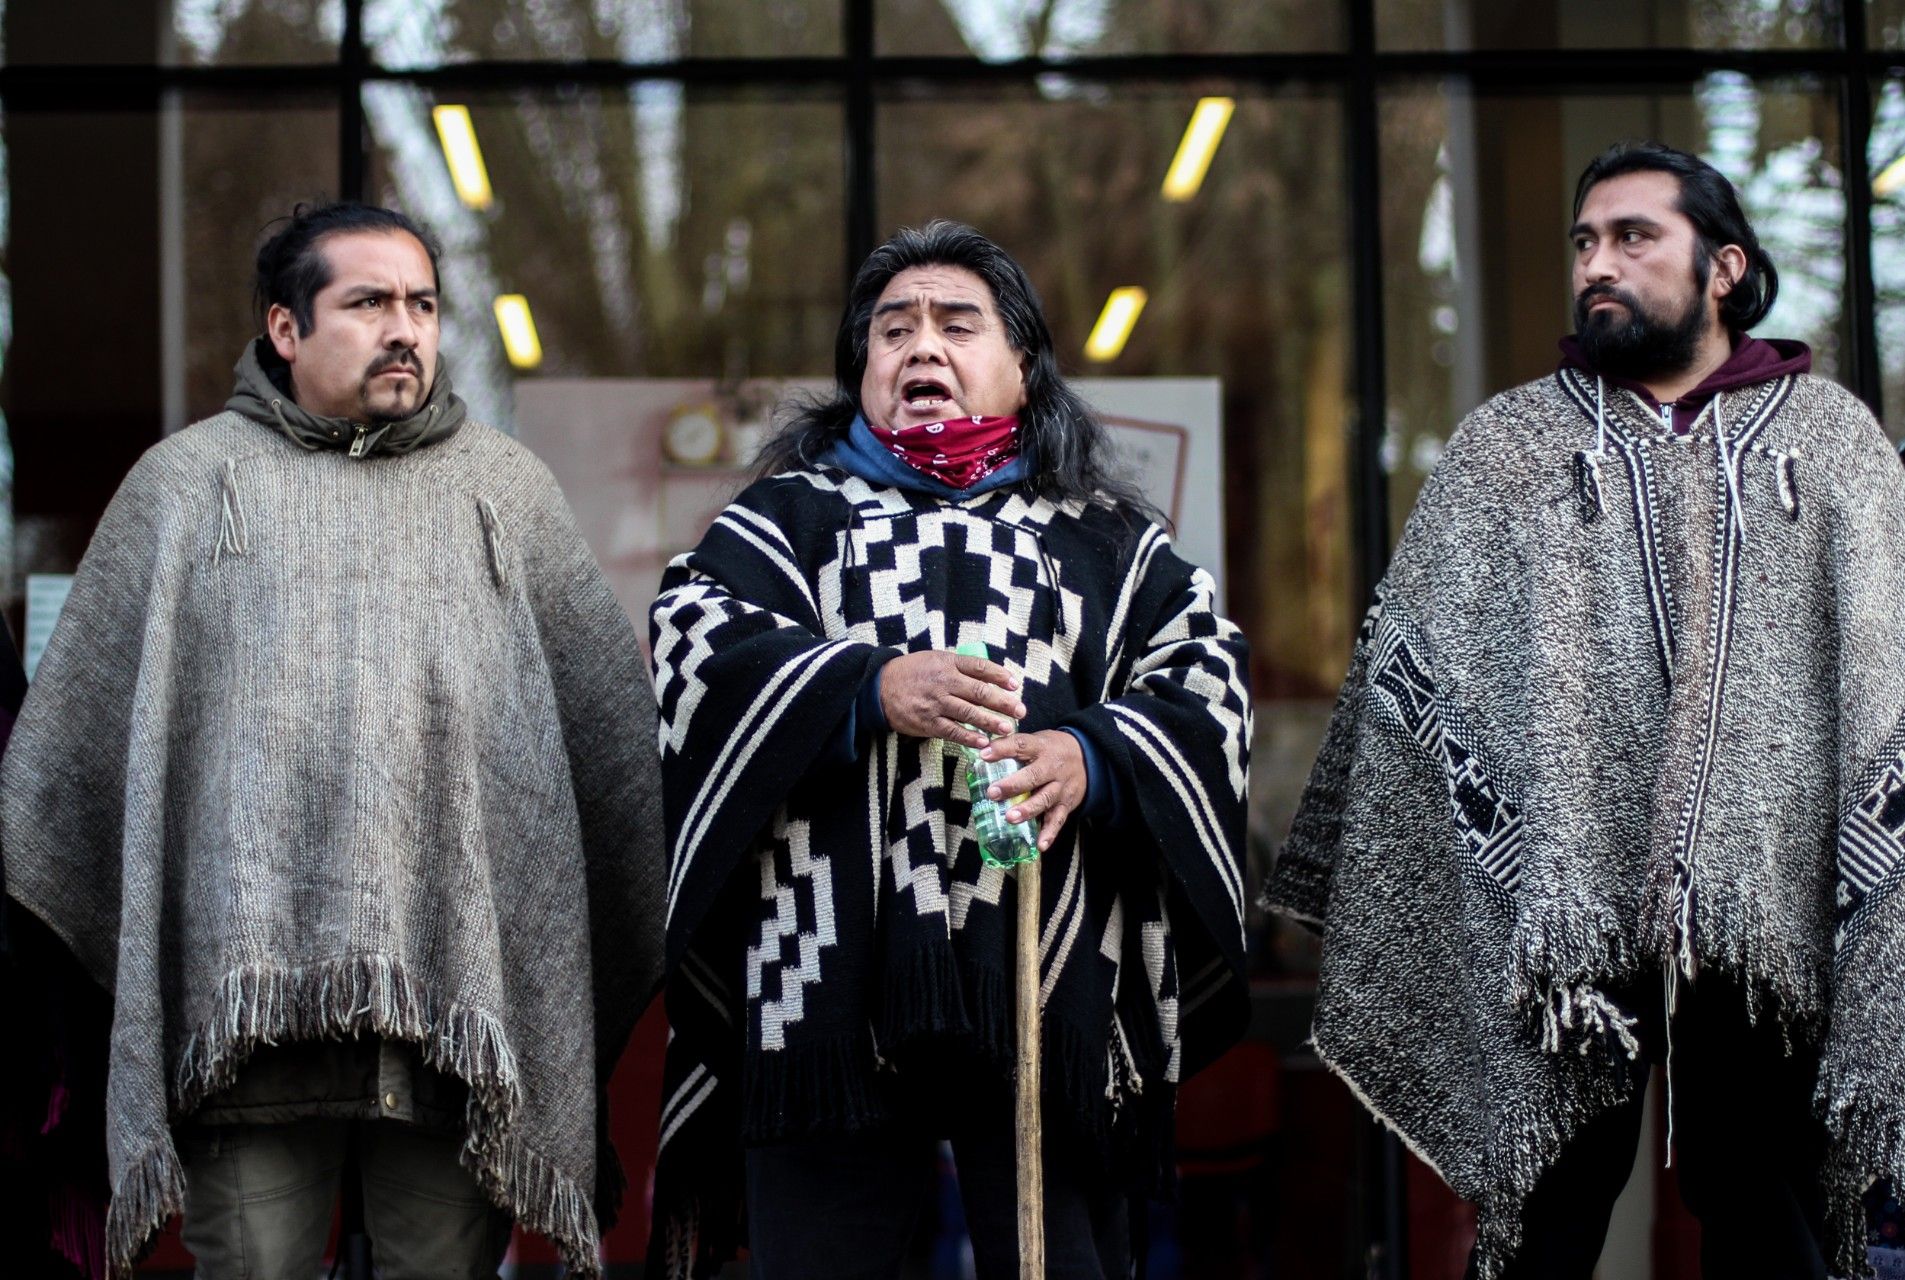 Movilización por la libertad de los presos políticos Mapuche en huelga de hambre realizada en Angol (Chile) durante el mes de julio.